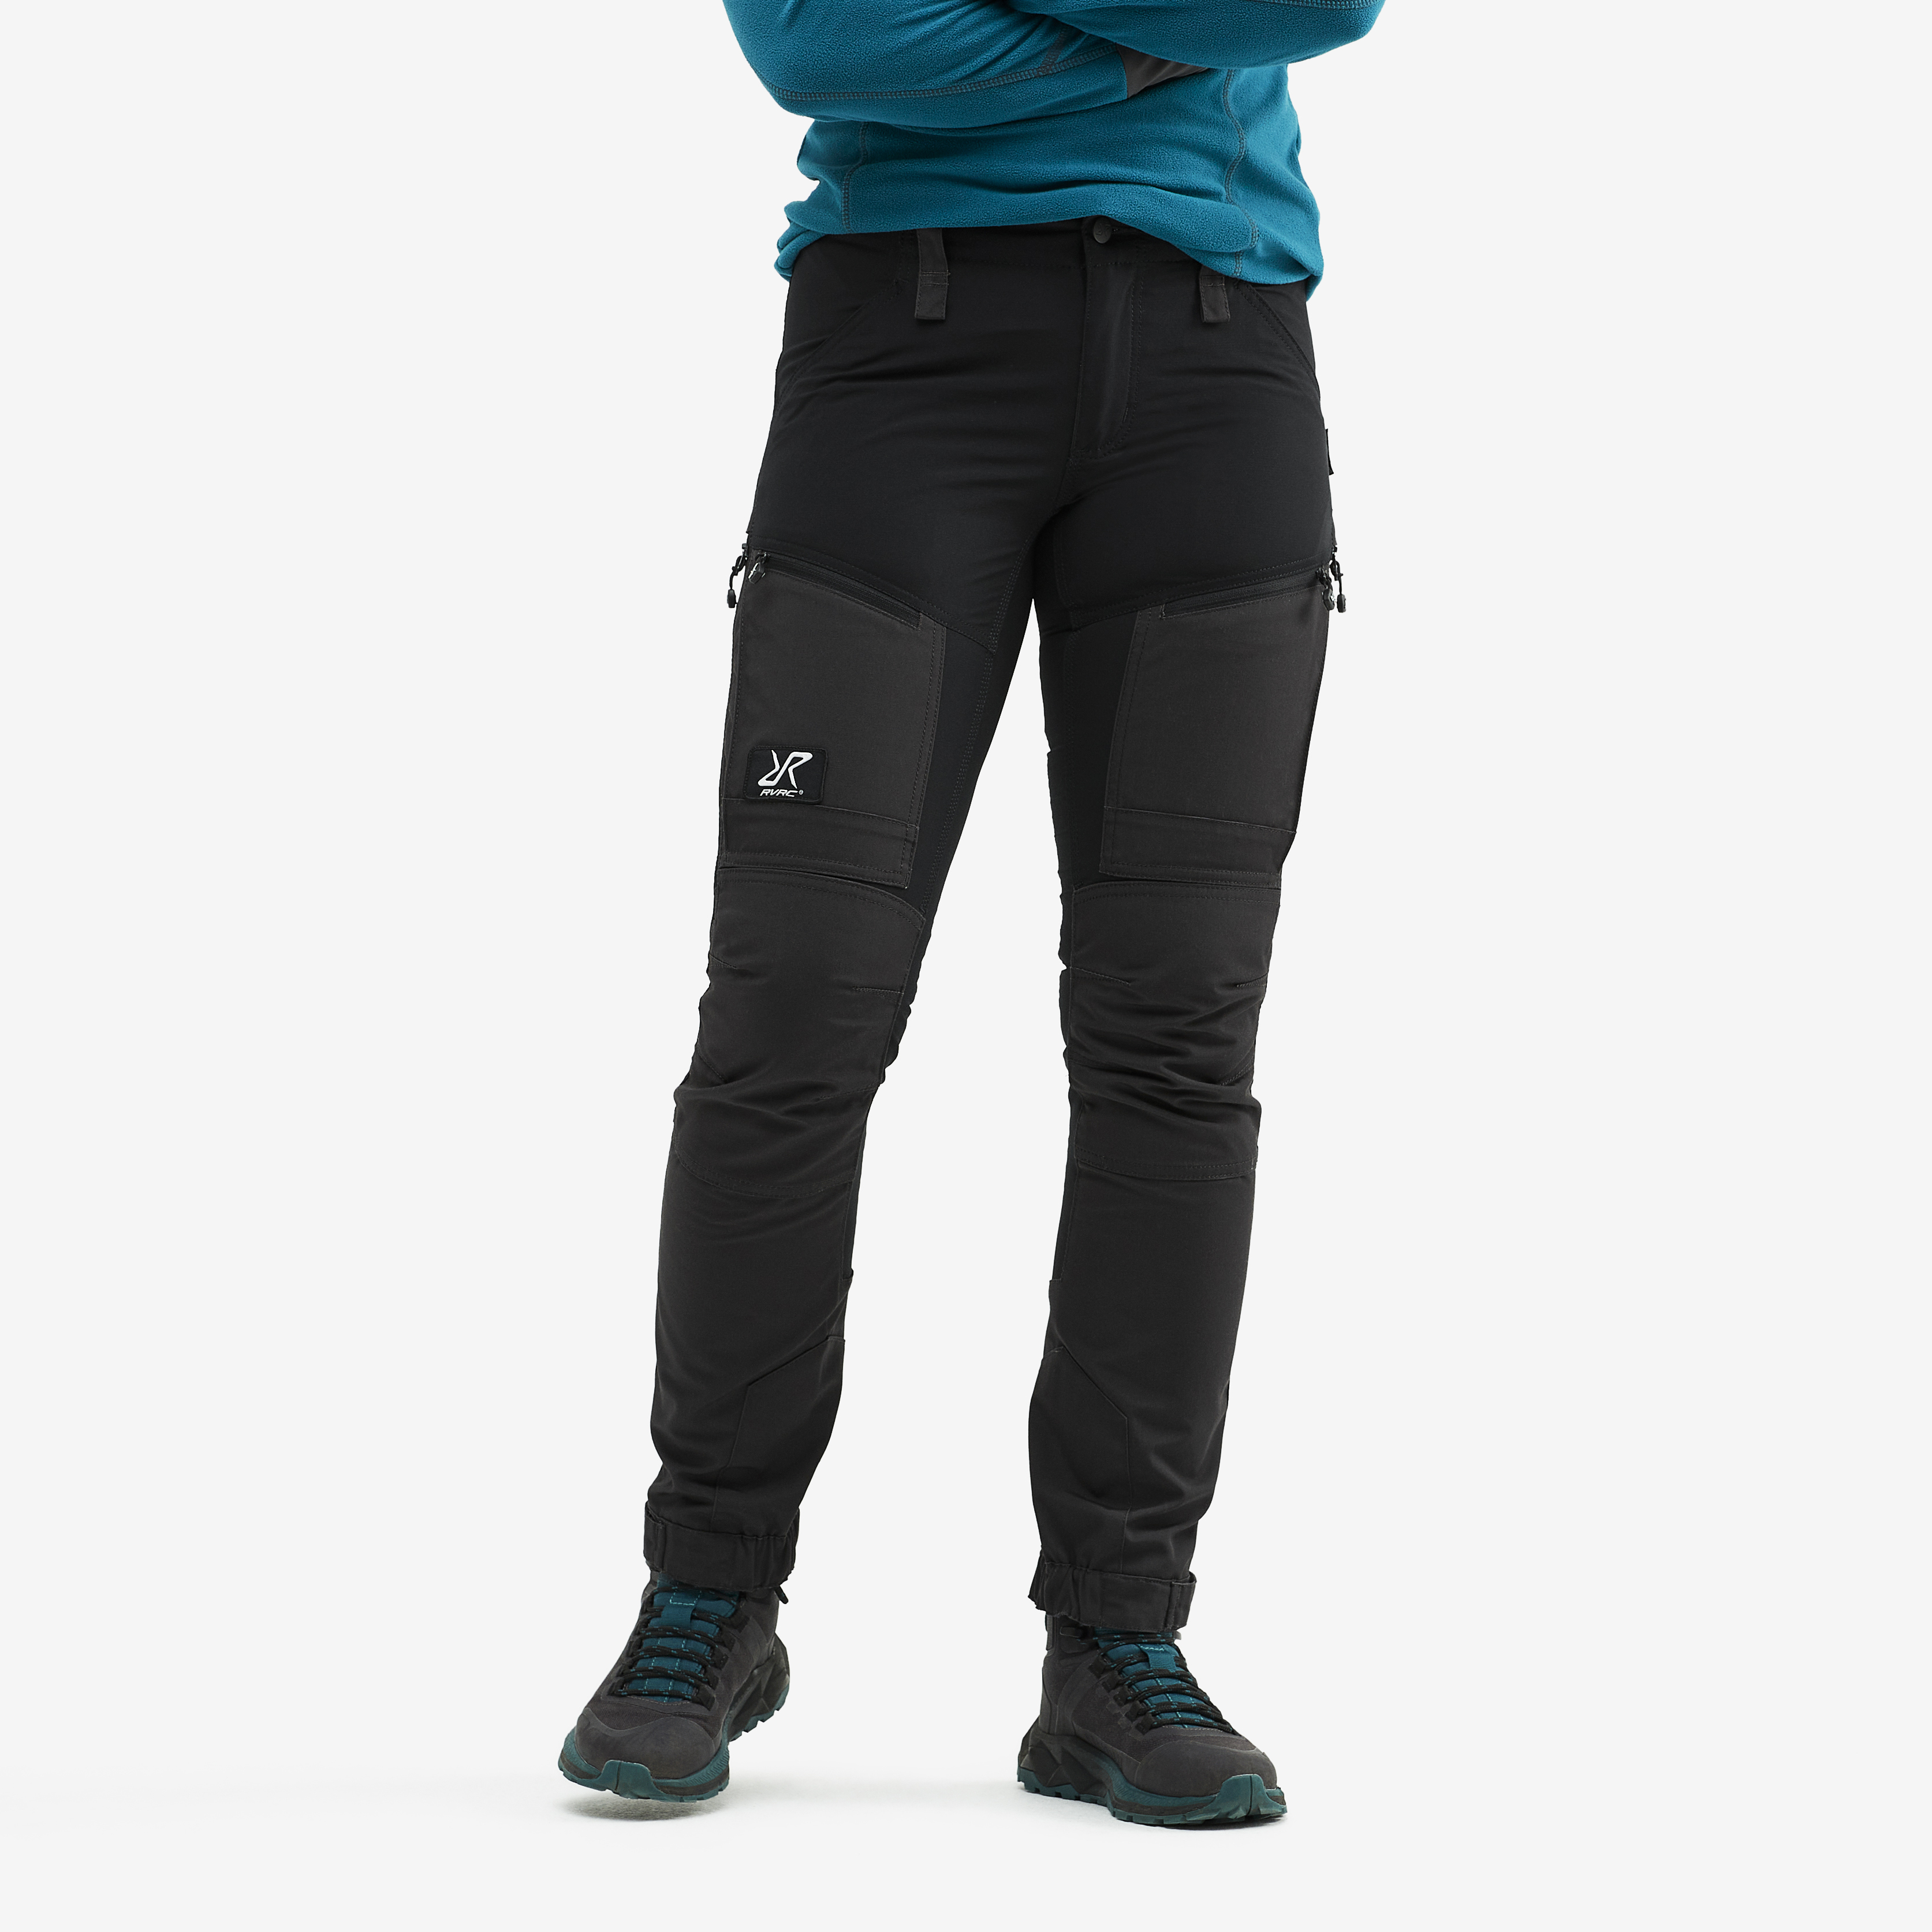 RVRC GP Pro Short turistické kalhoty pro ženy v černé barvě